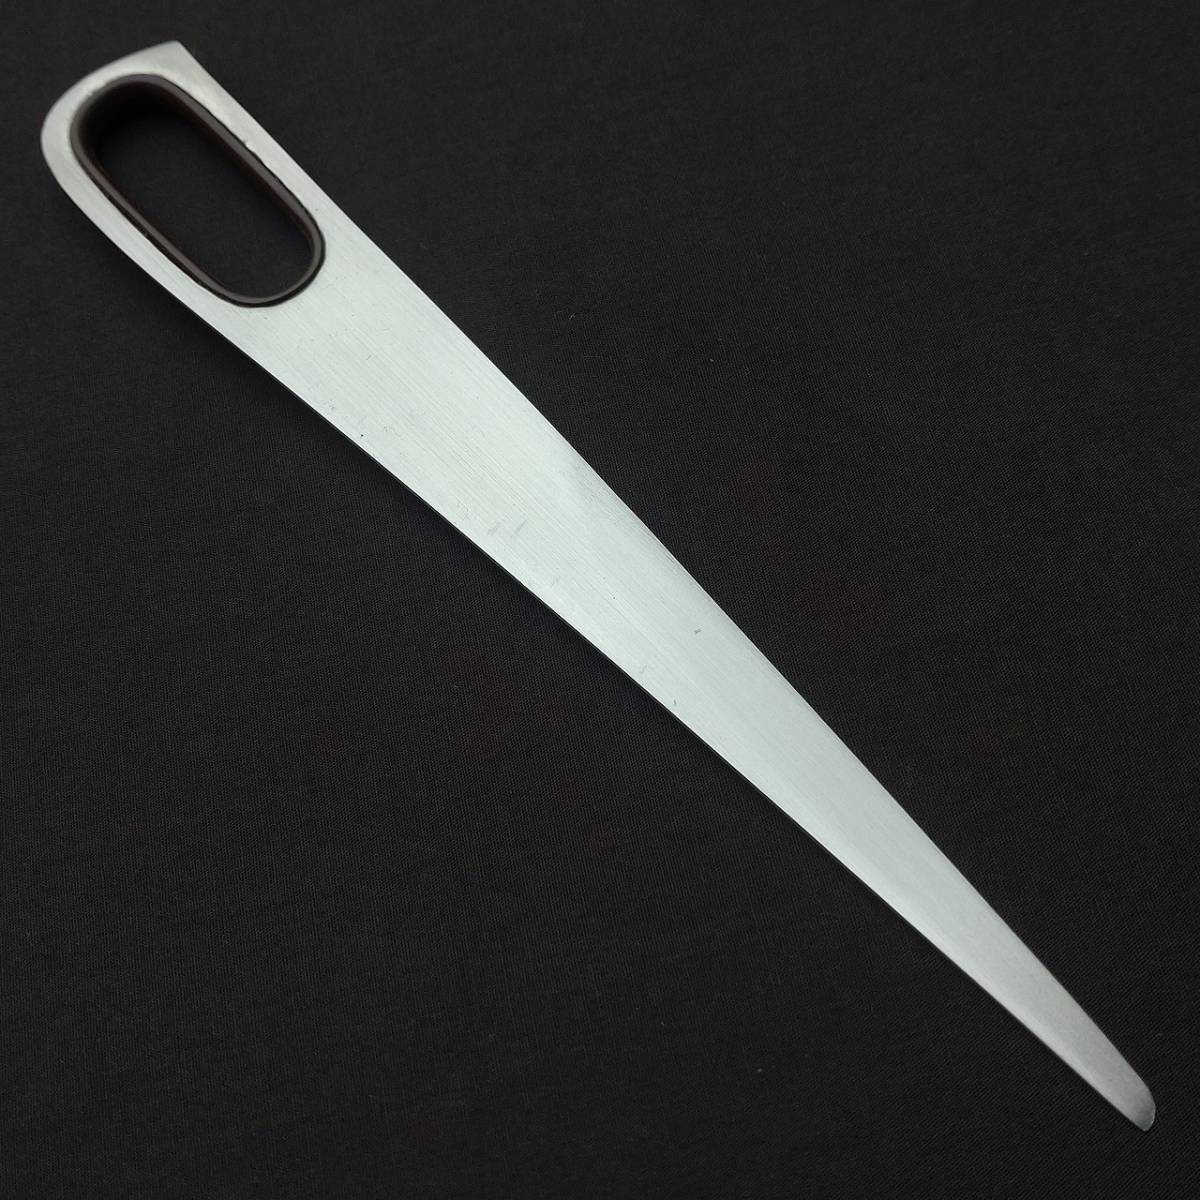  нож для бумаги письмо устройство открывания SUPER ELEX общая длина примерно 200. бумага нож канцелярские товары Japanese Paper knife [4677]